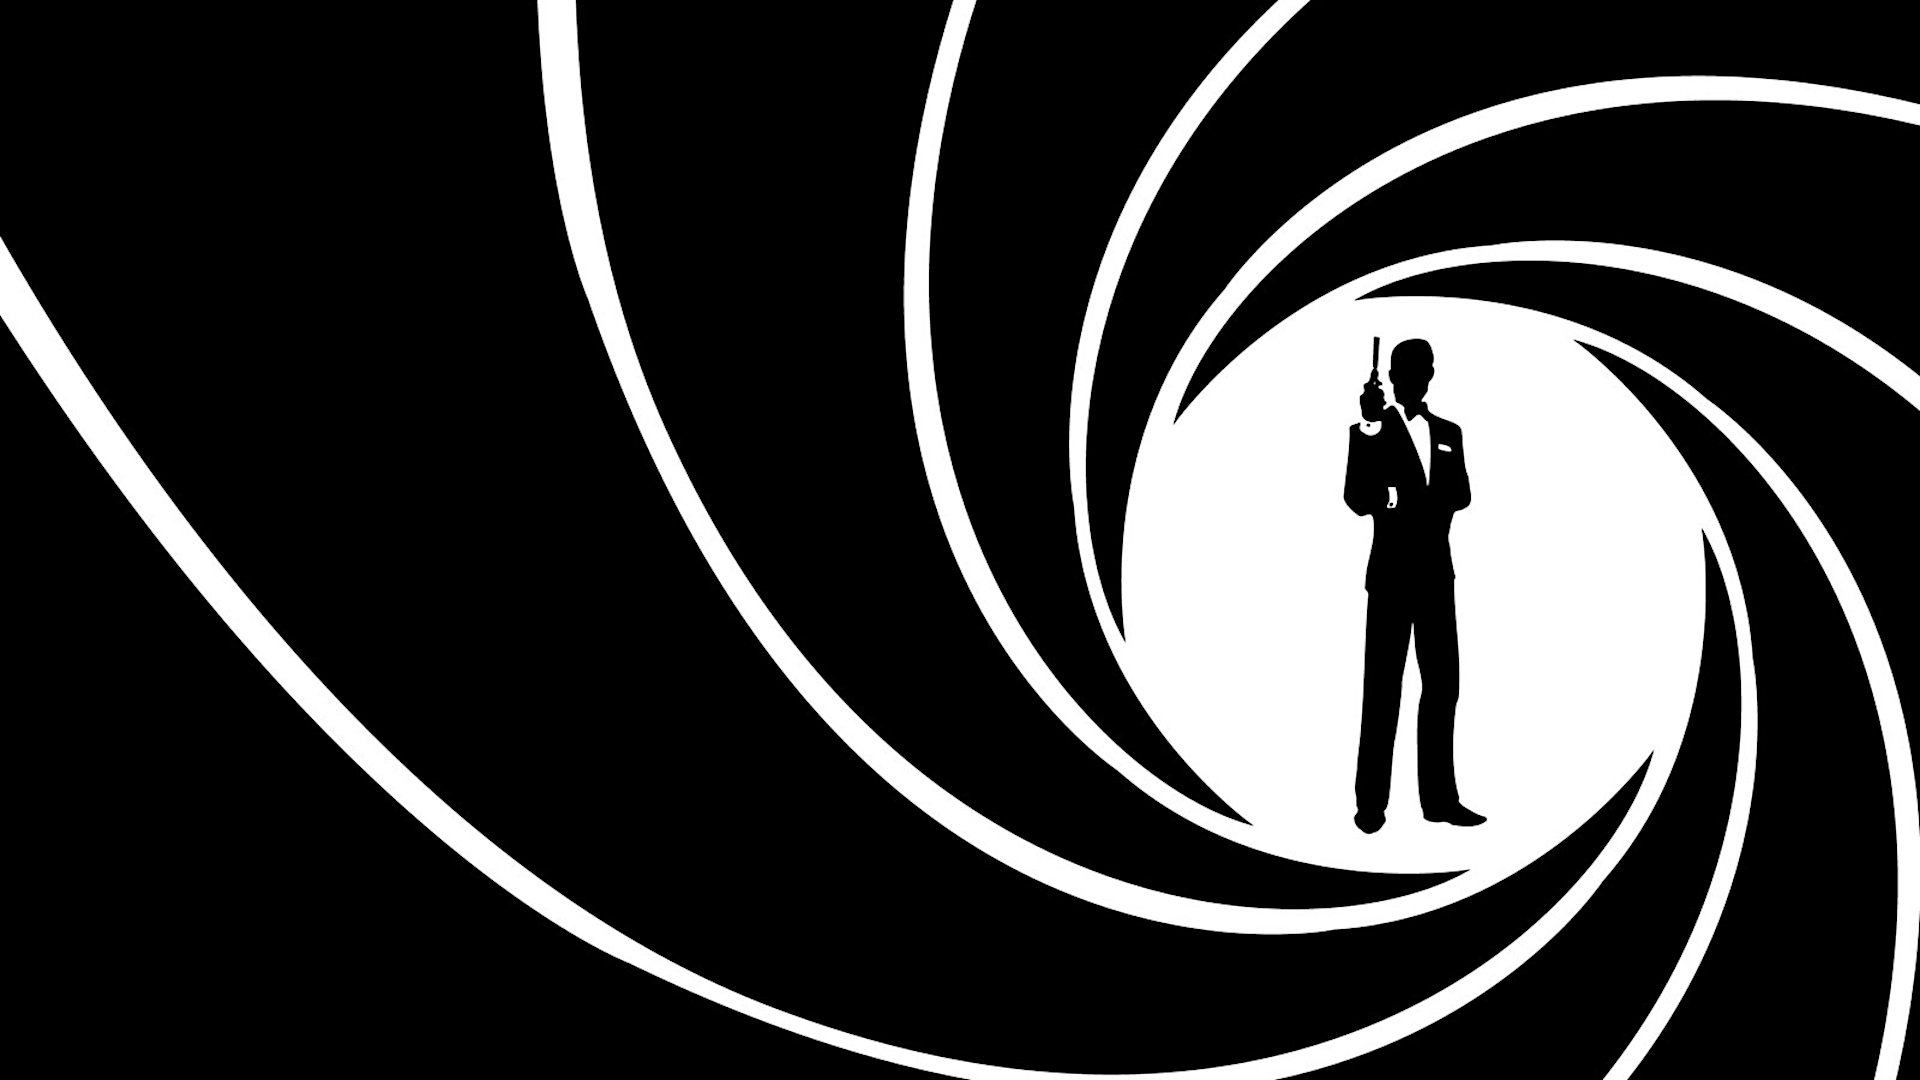 007: James Bond: The Stealth Affair